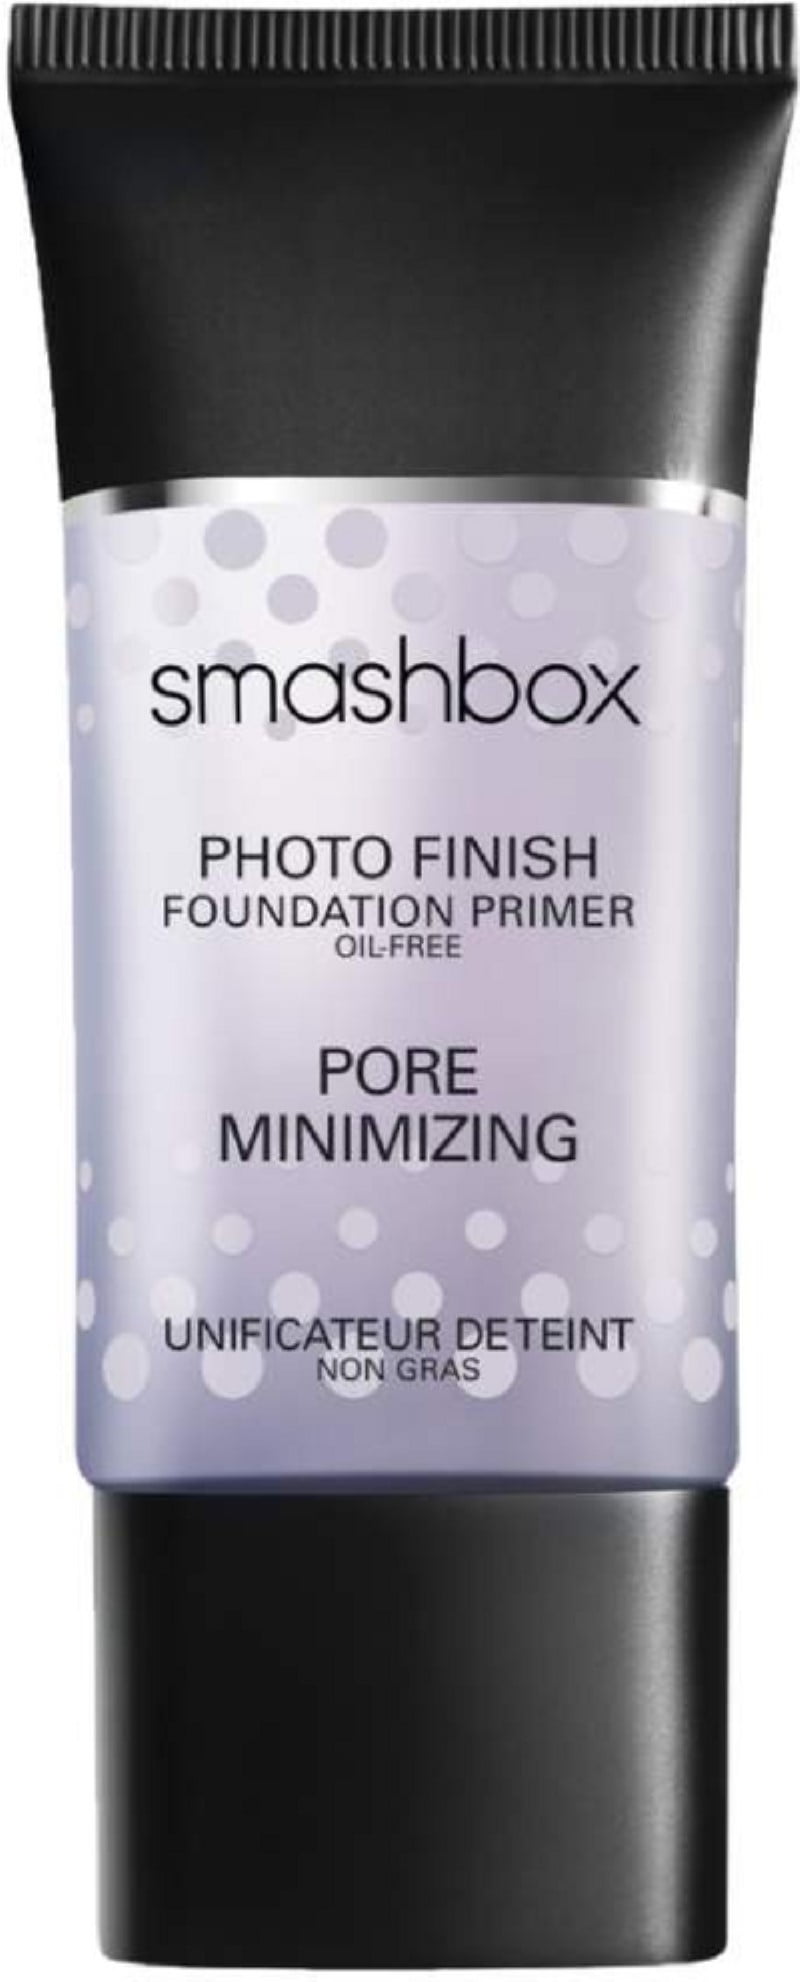 Smashbox Photo Finish Pore Minimizing Foundation Primer: First